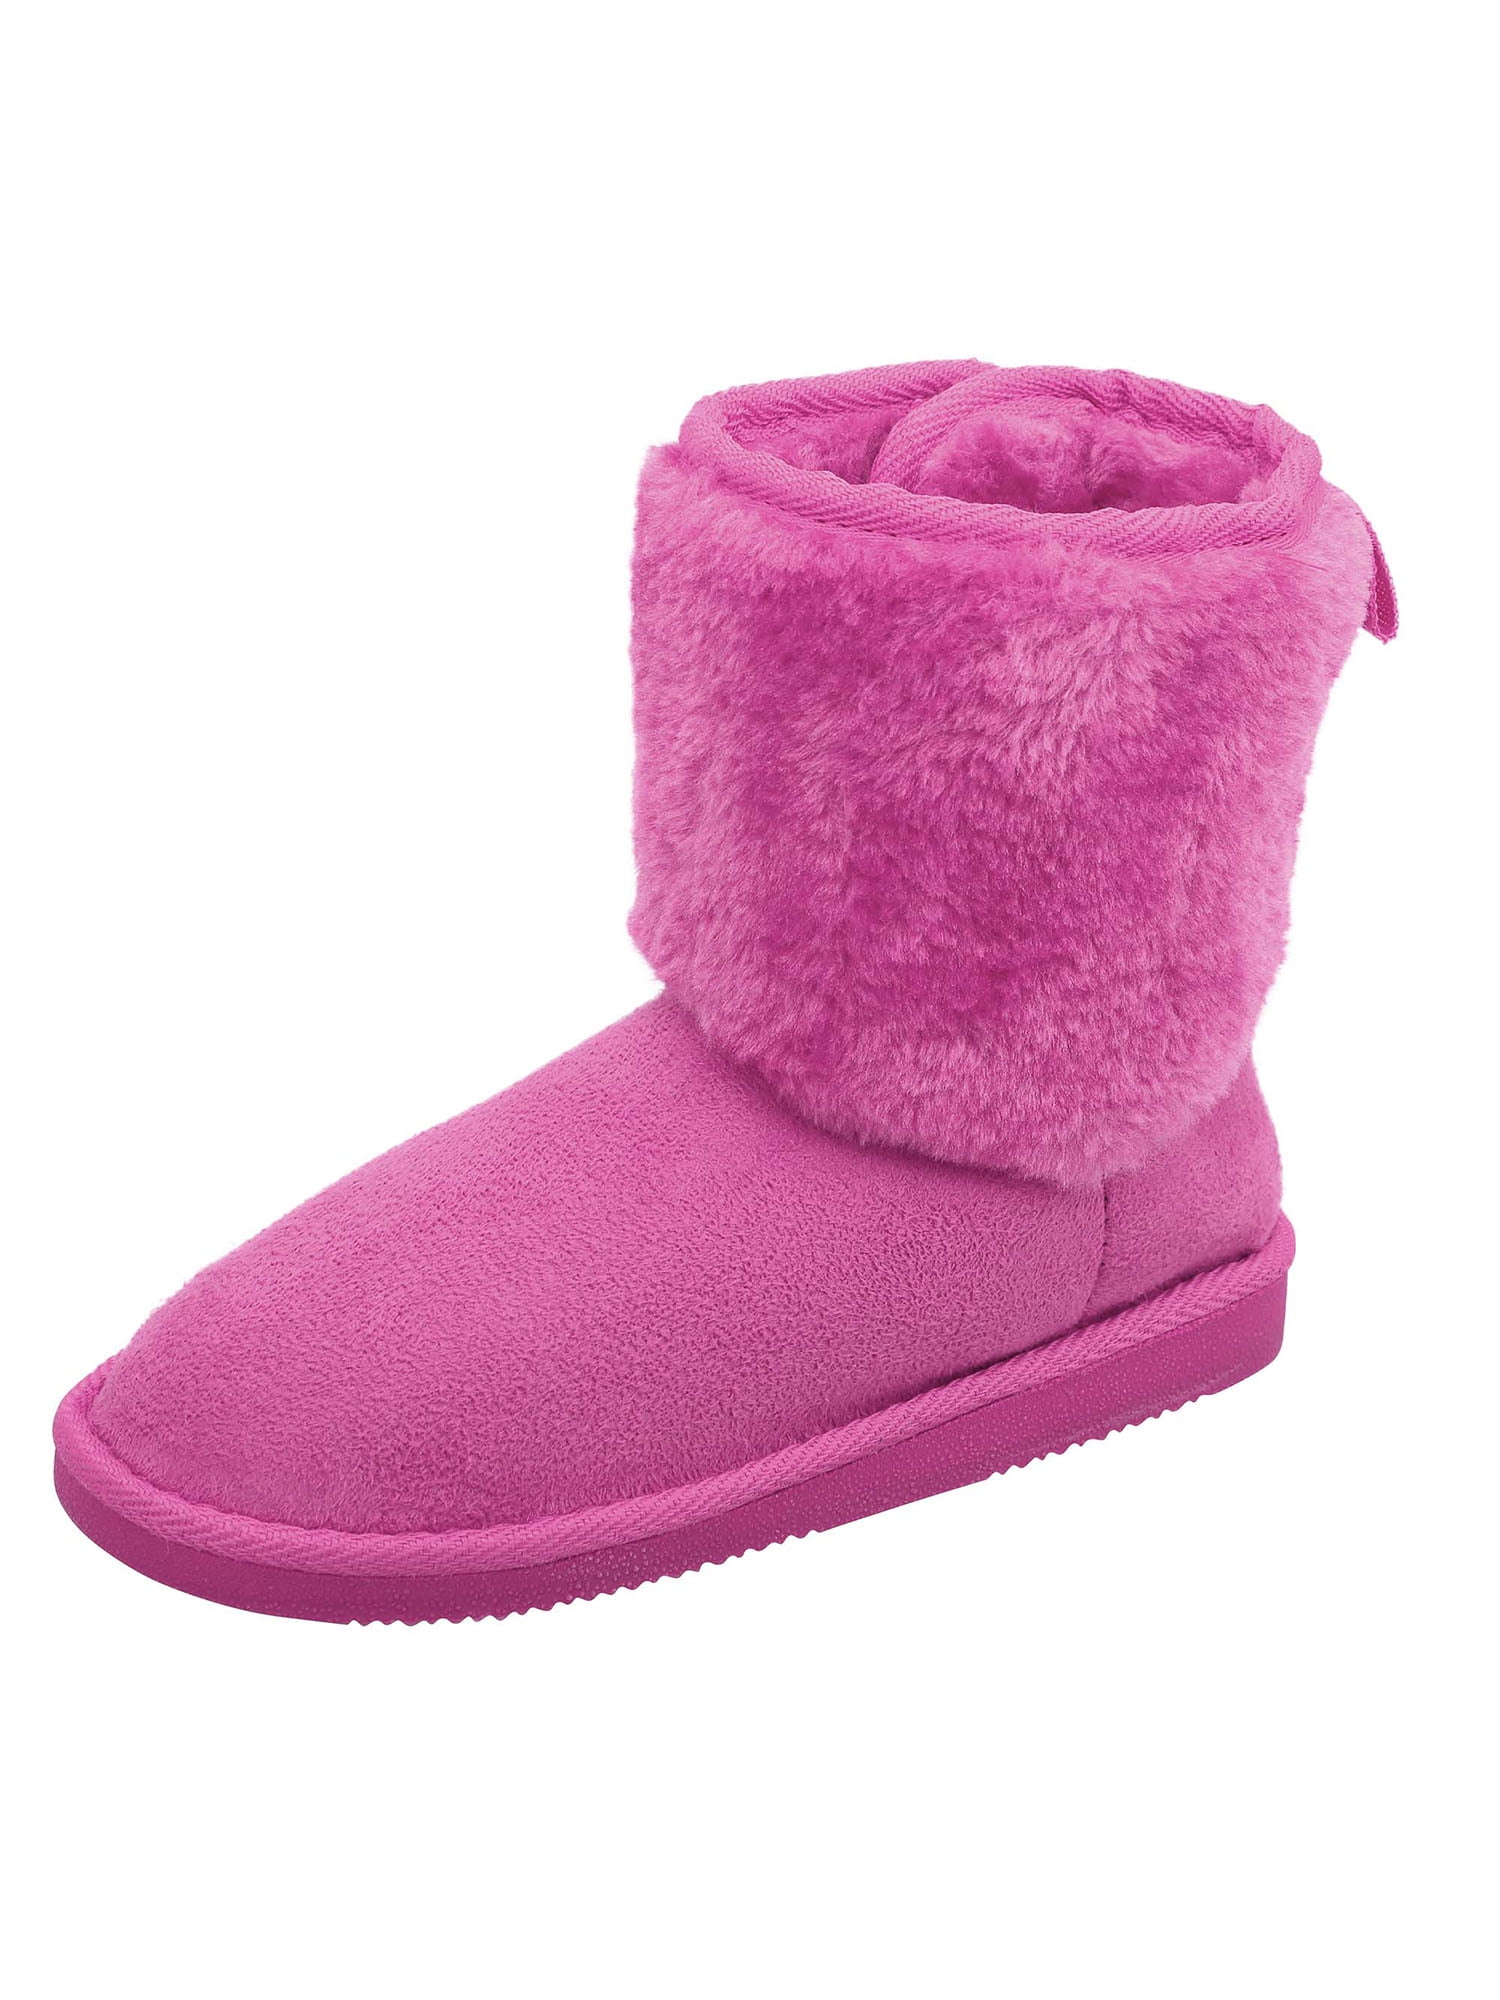 walmart girls winter boots